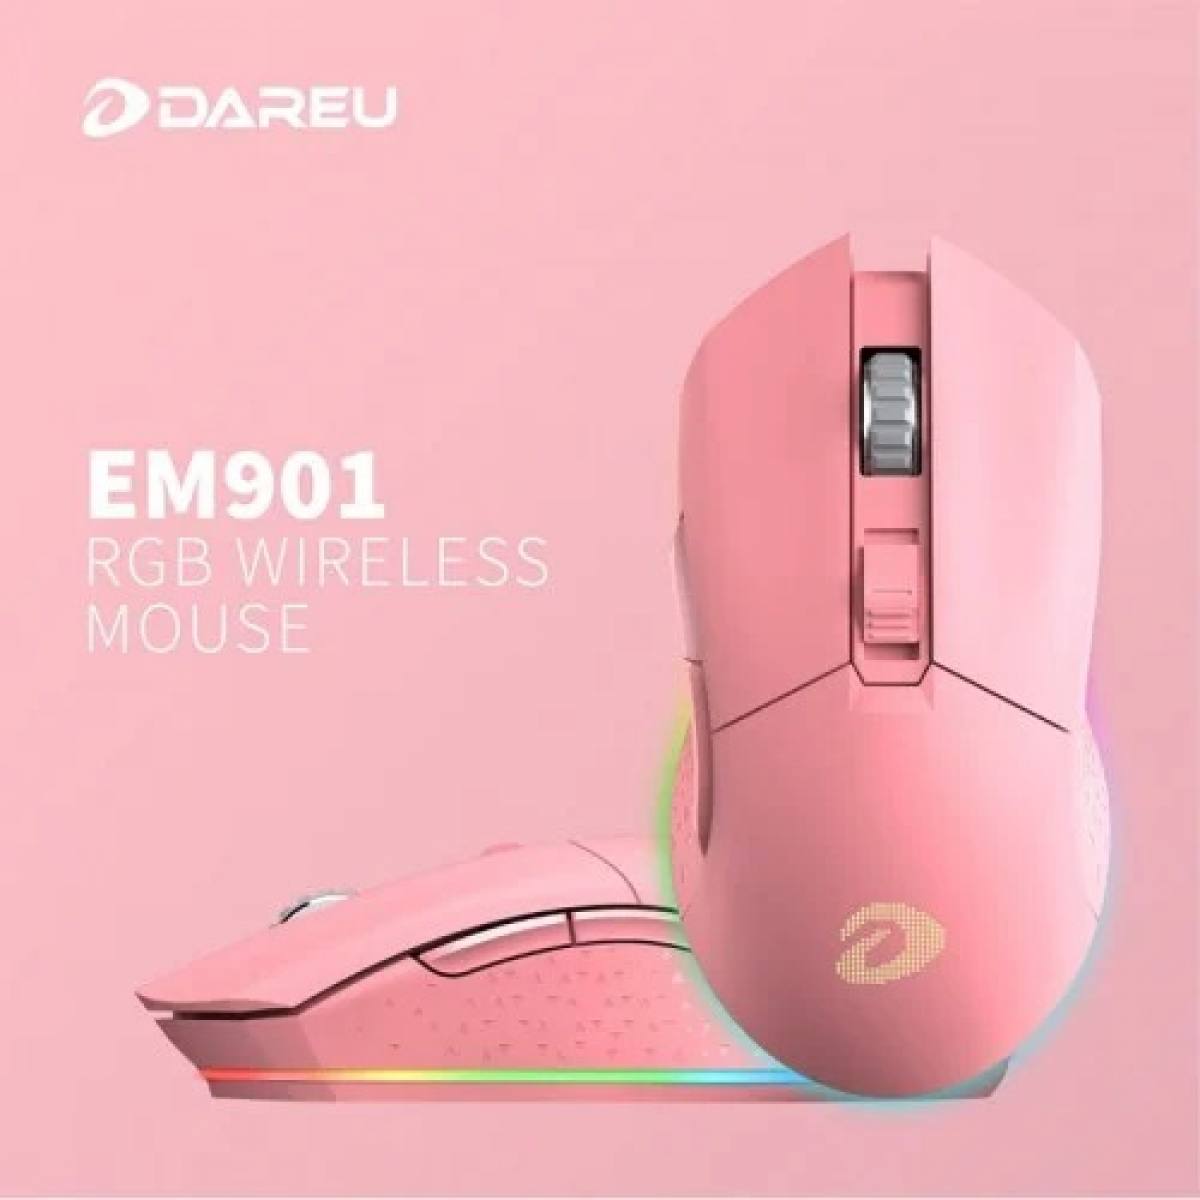 Chuột DareU EM901 RGB Wireless - Hồng